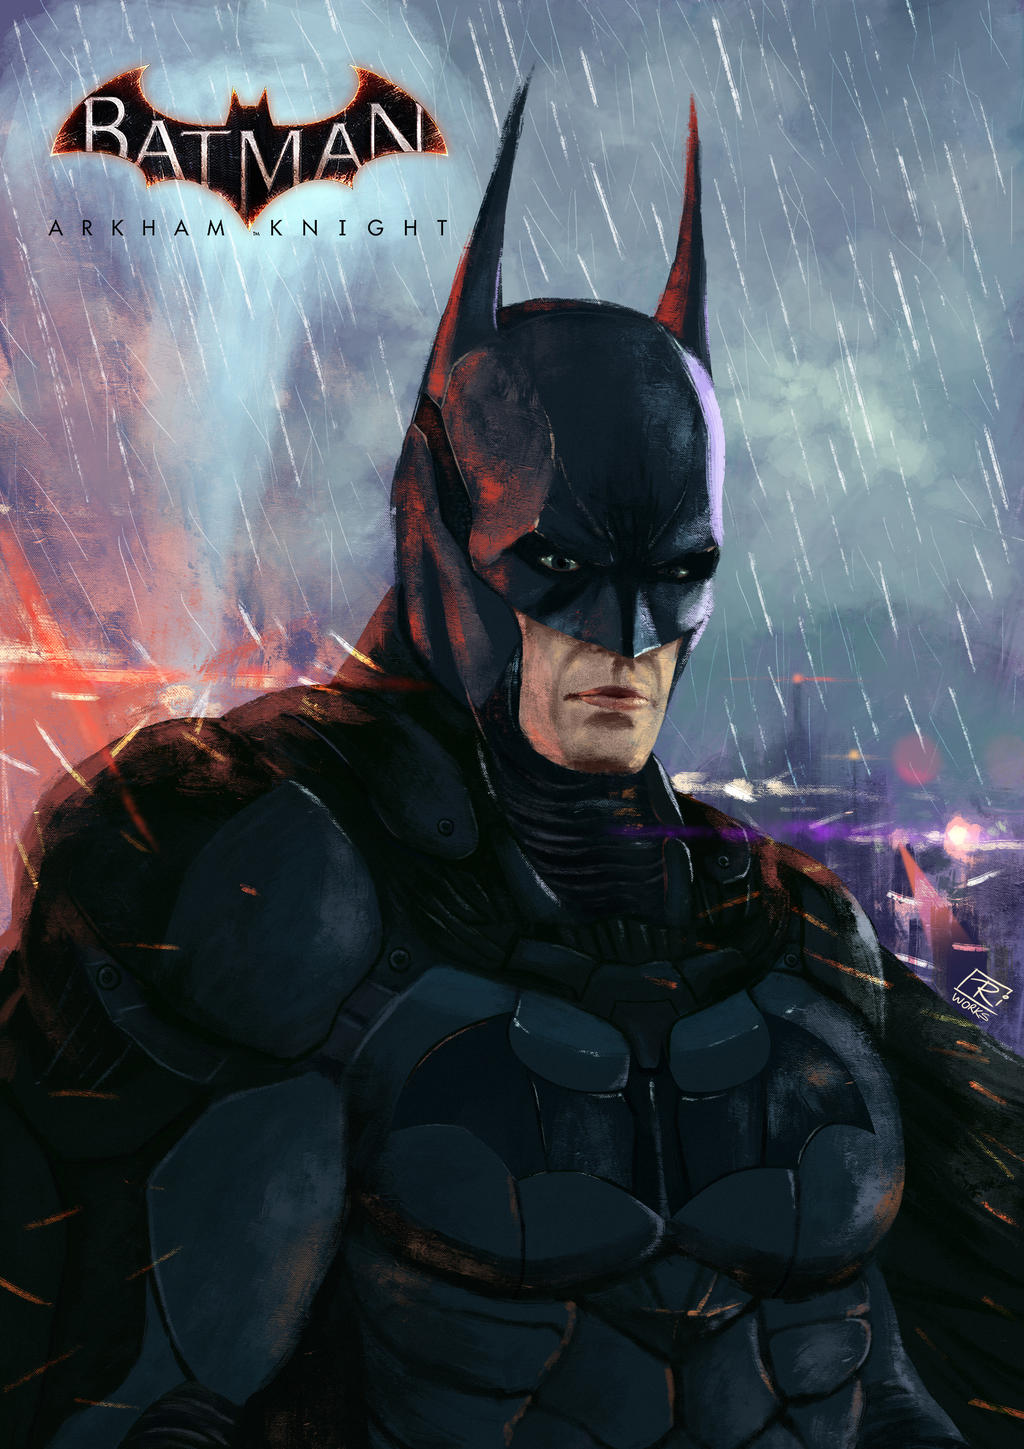 Batman Arkham knight fanart by Aryctek on DeviantArt